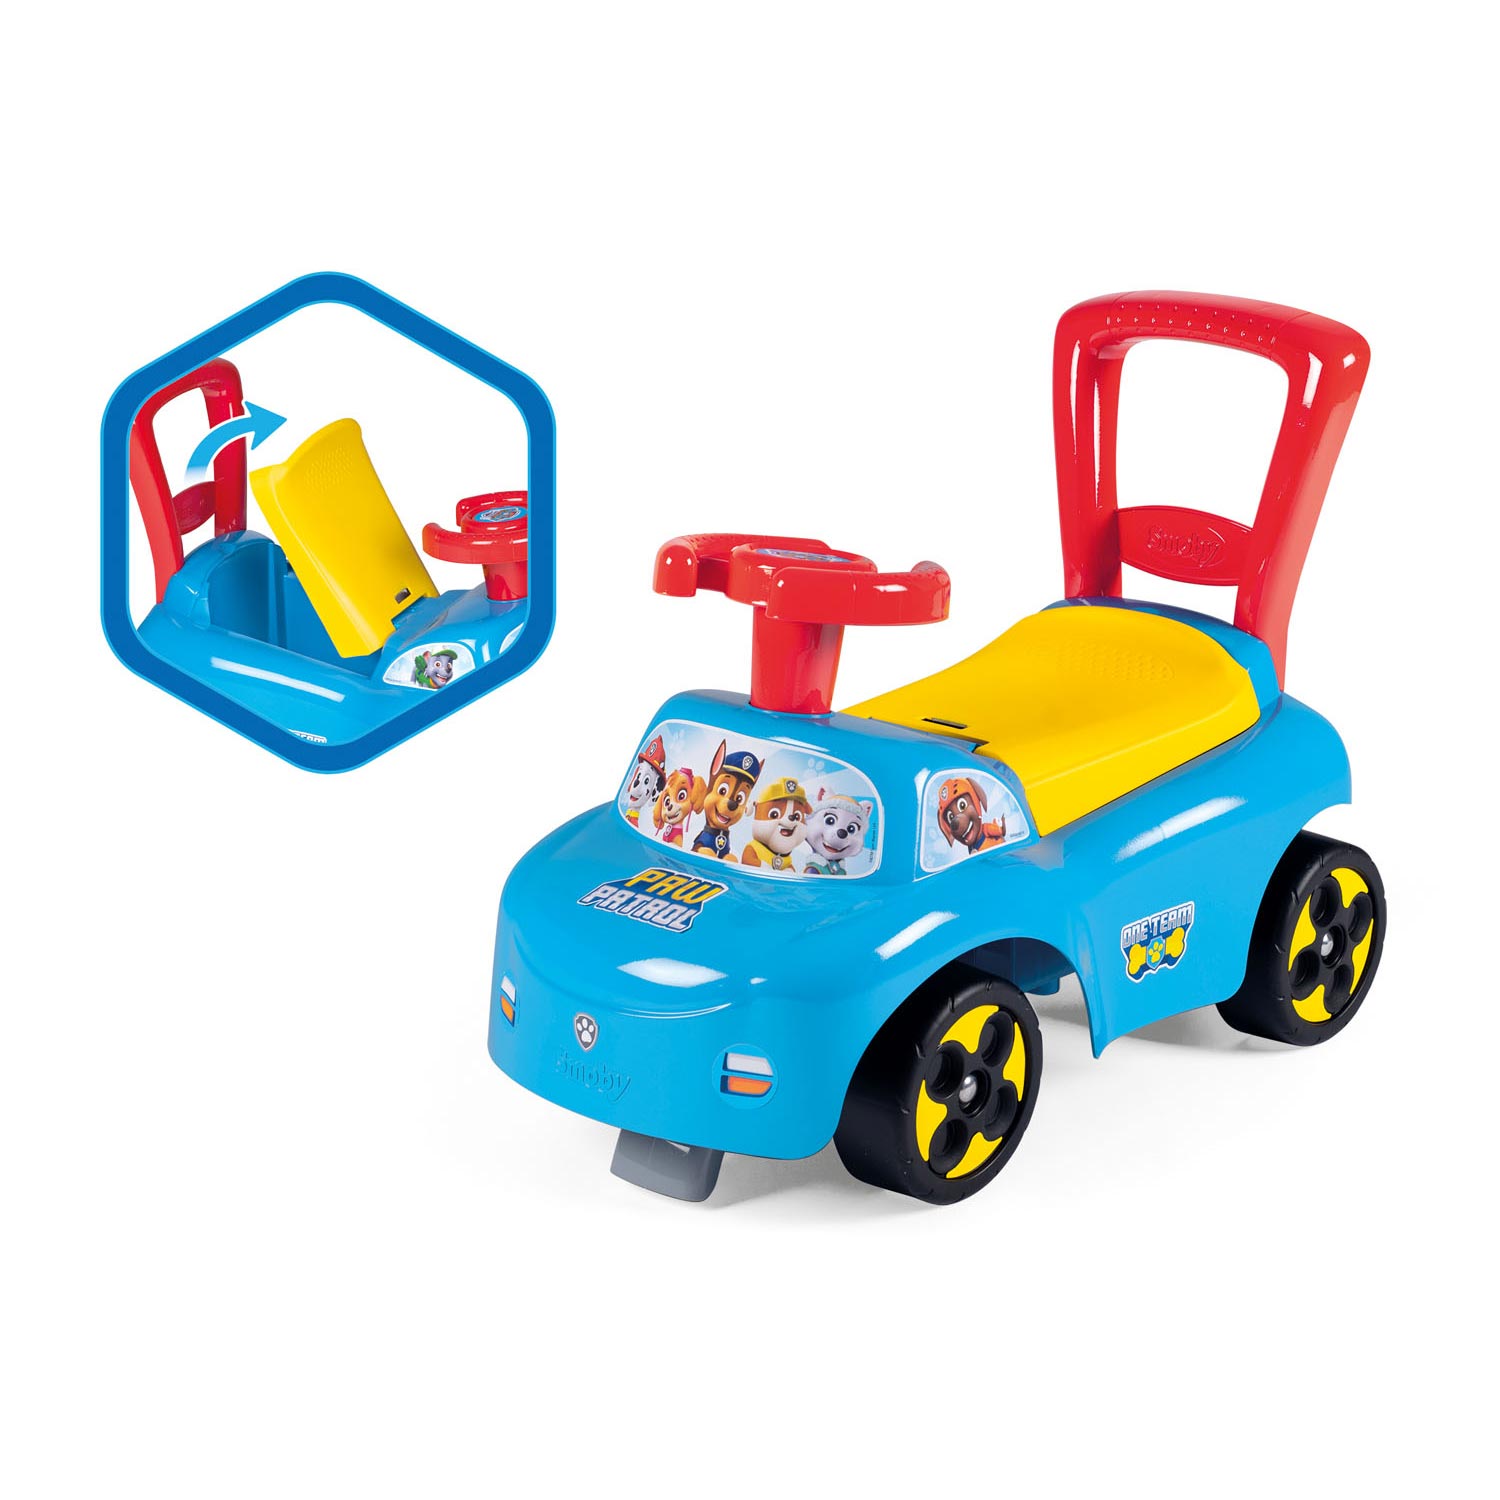 Topray Ride on Kids Spielzeug Auto Abdeckung Kompatibel mit Kinder